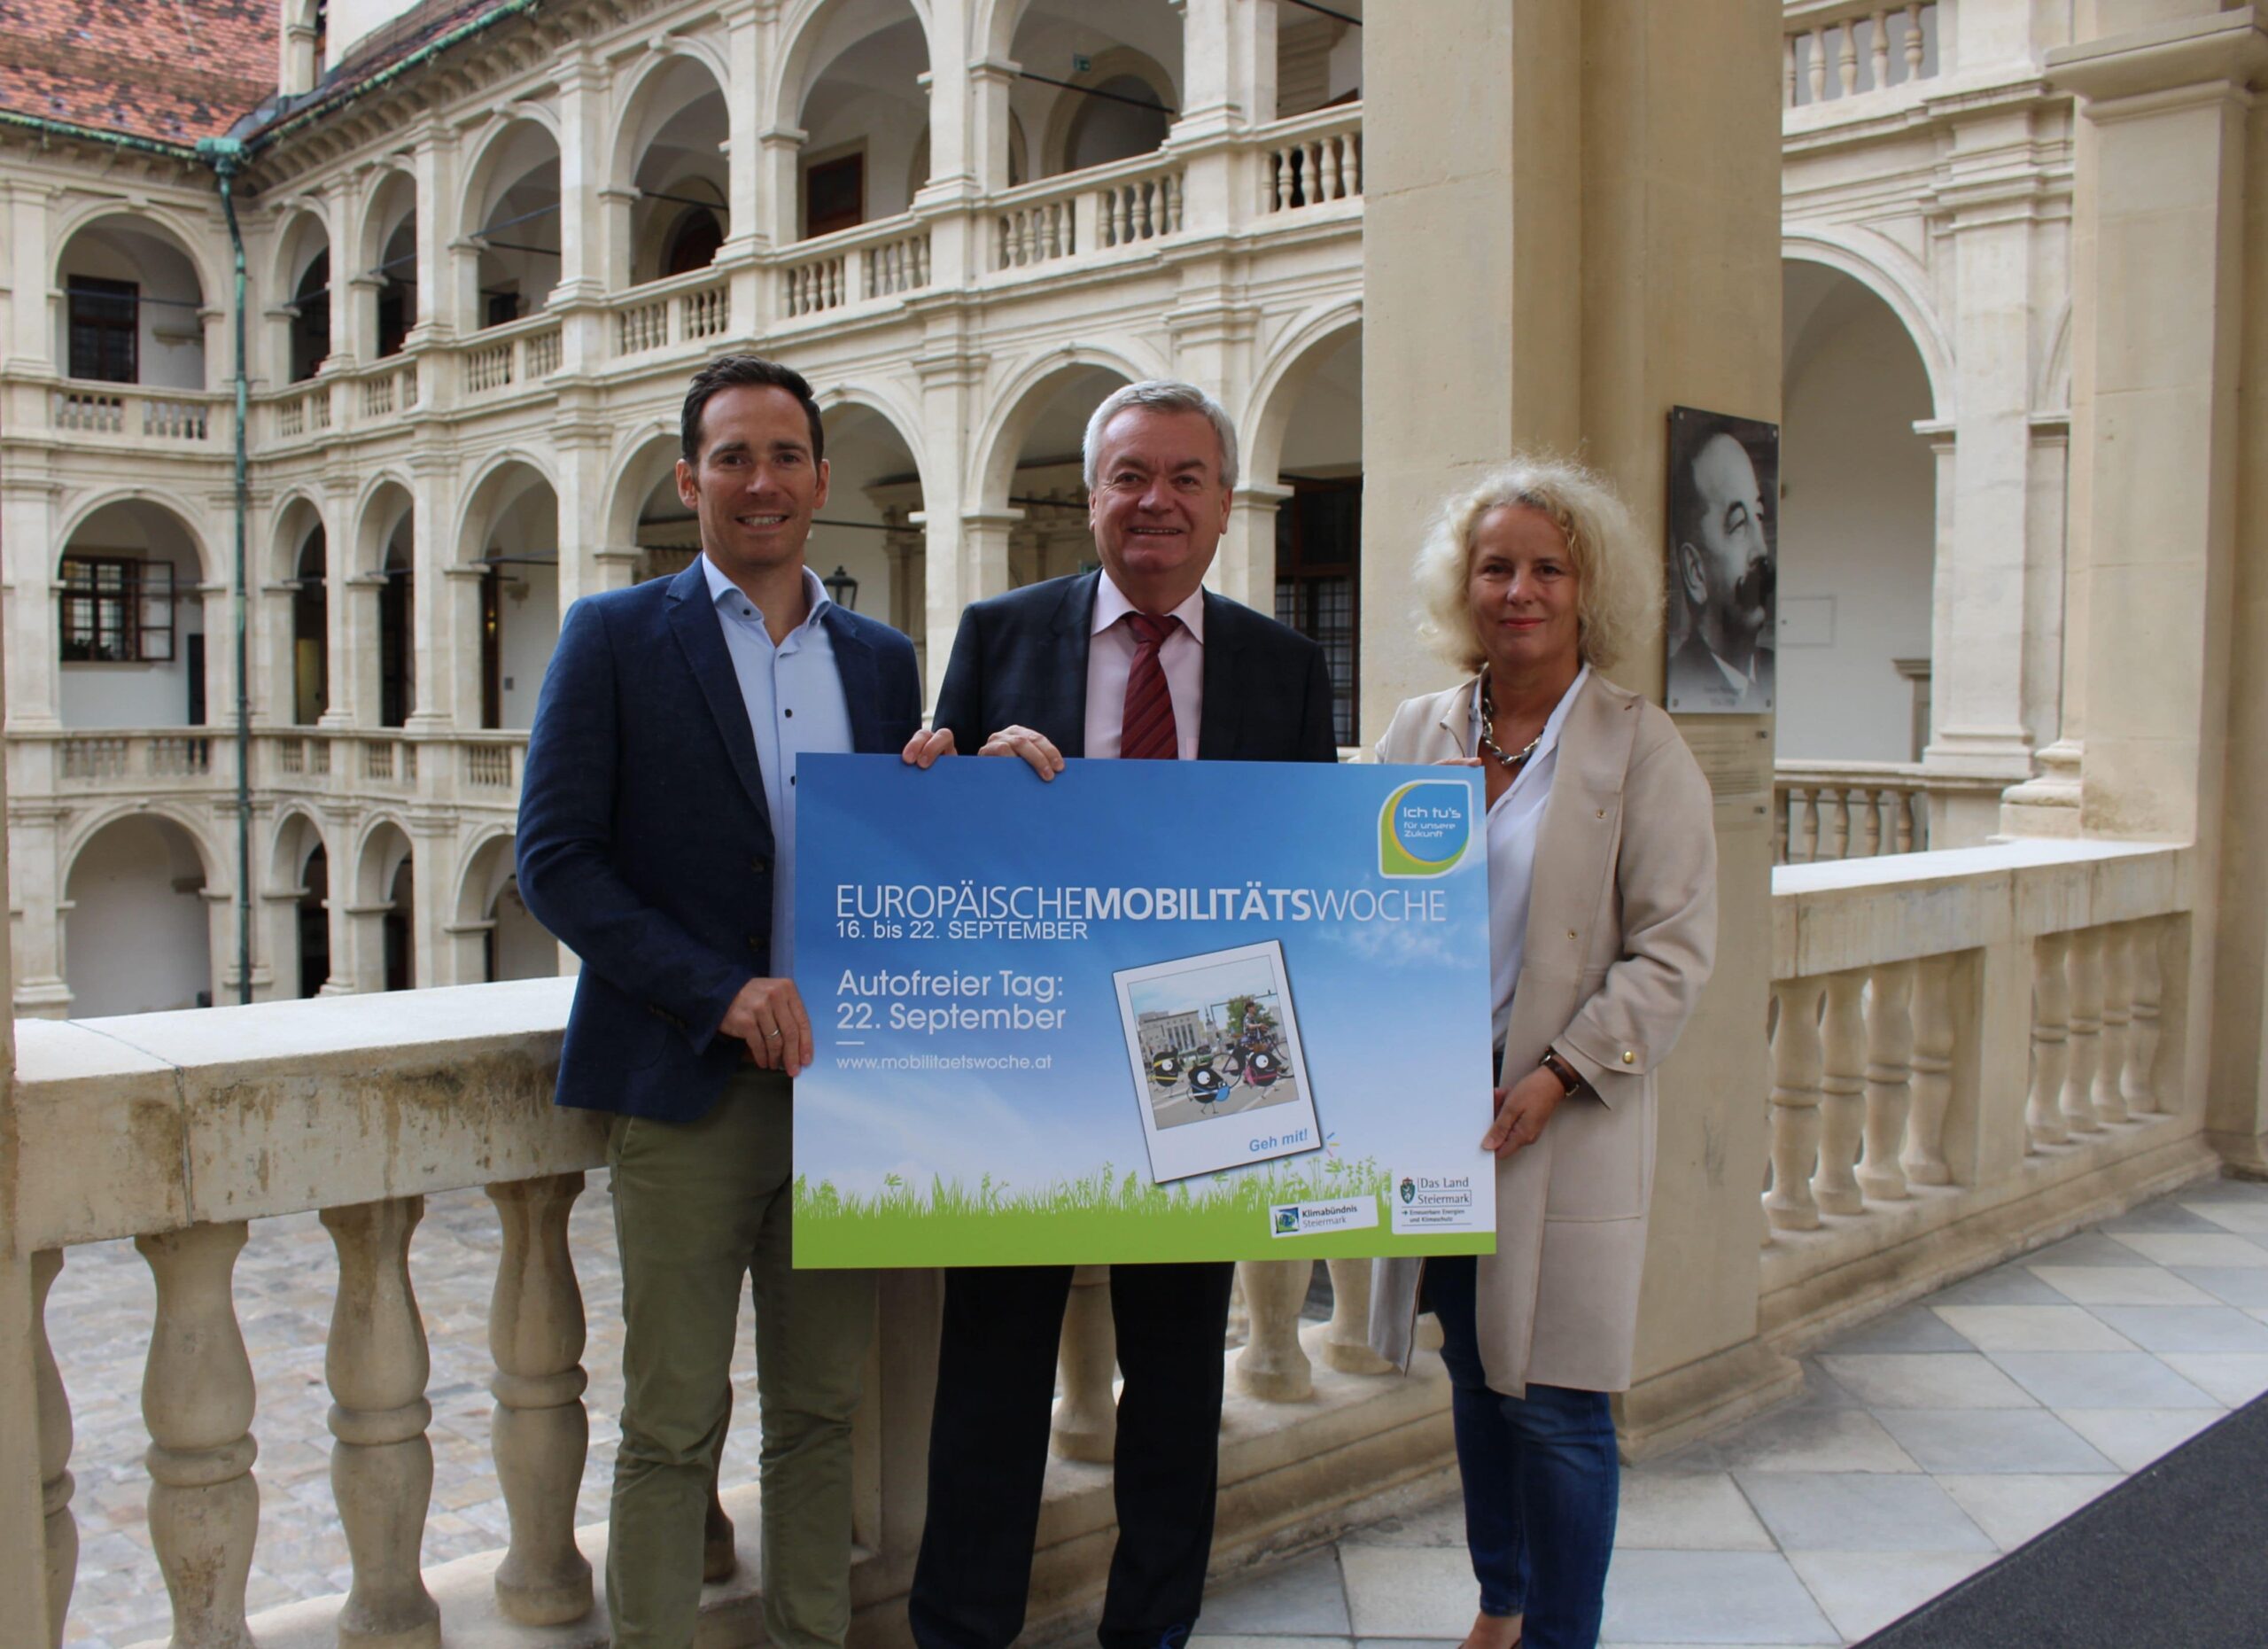 Friedrich Hofer, Klimabündnis Steiermark gemeinsam mit Landesrat Anton Lang und Andrea Gössinger-Wieser, Klimaschutzkoordinatorin Land Steiermark machen sich für die Europäische Mobilitätswoche stark.